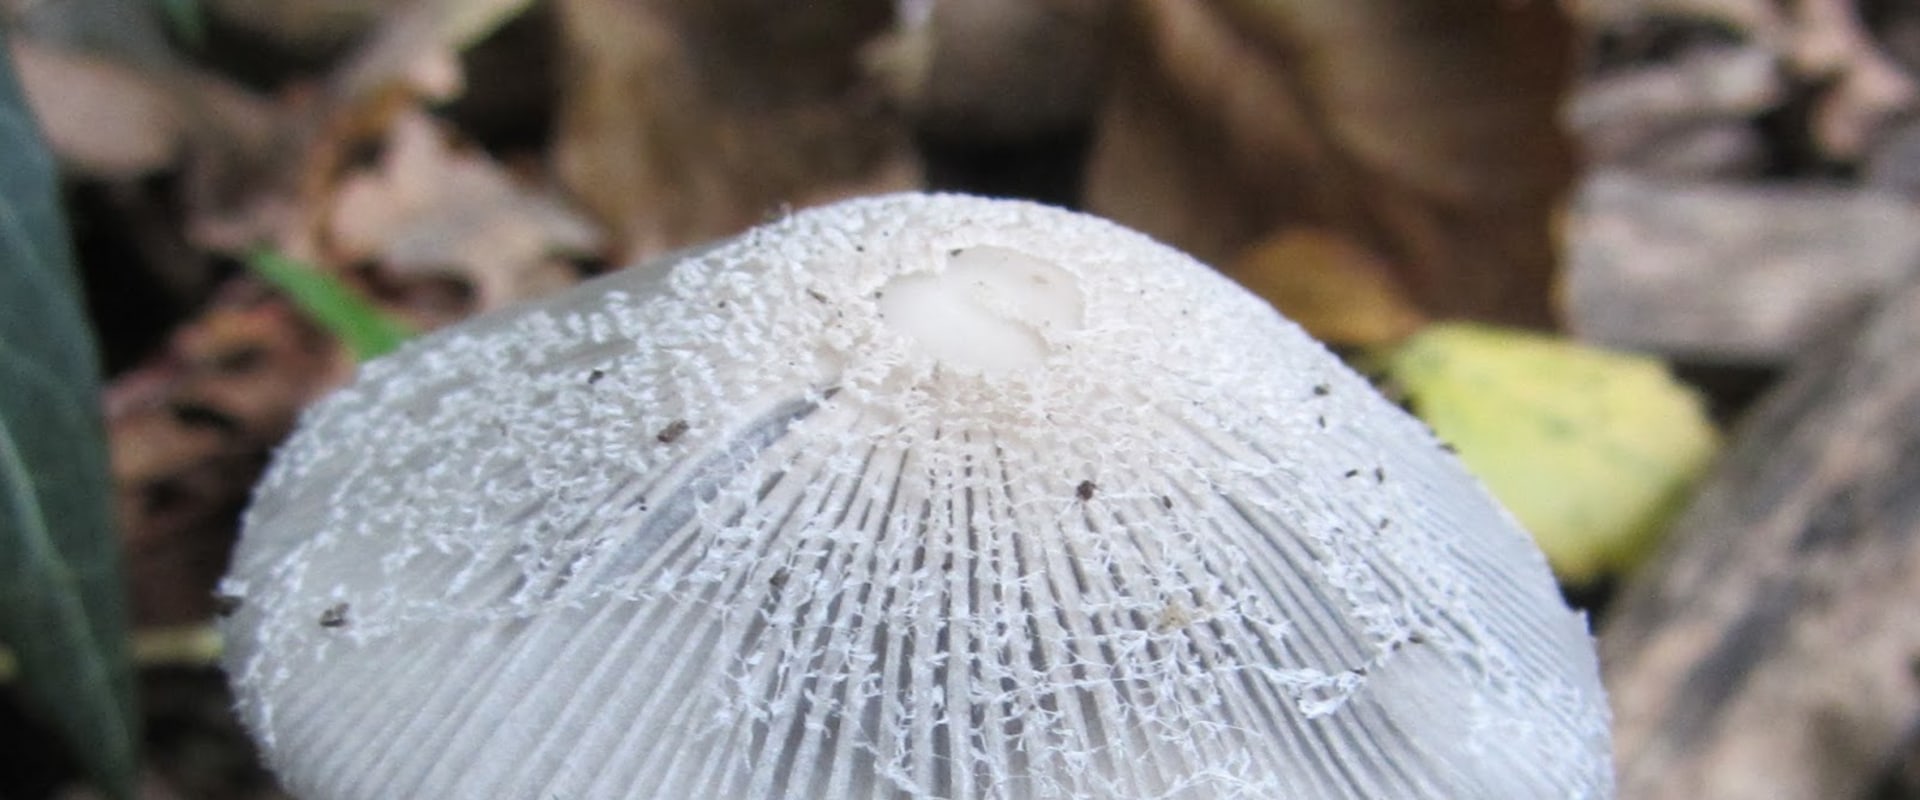 Wilde paddenstoelen in de achtertuin?